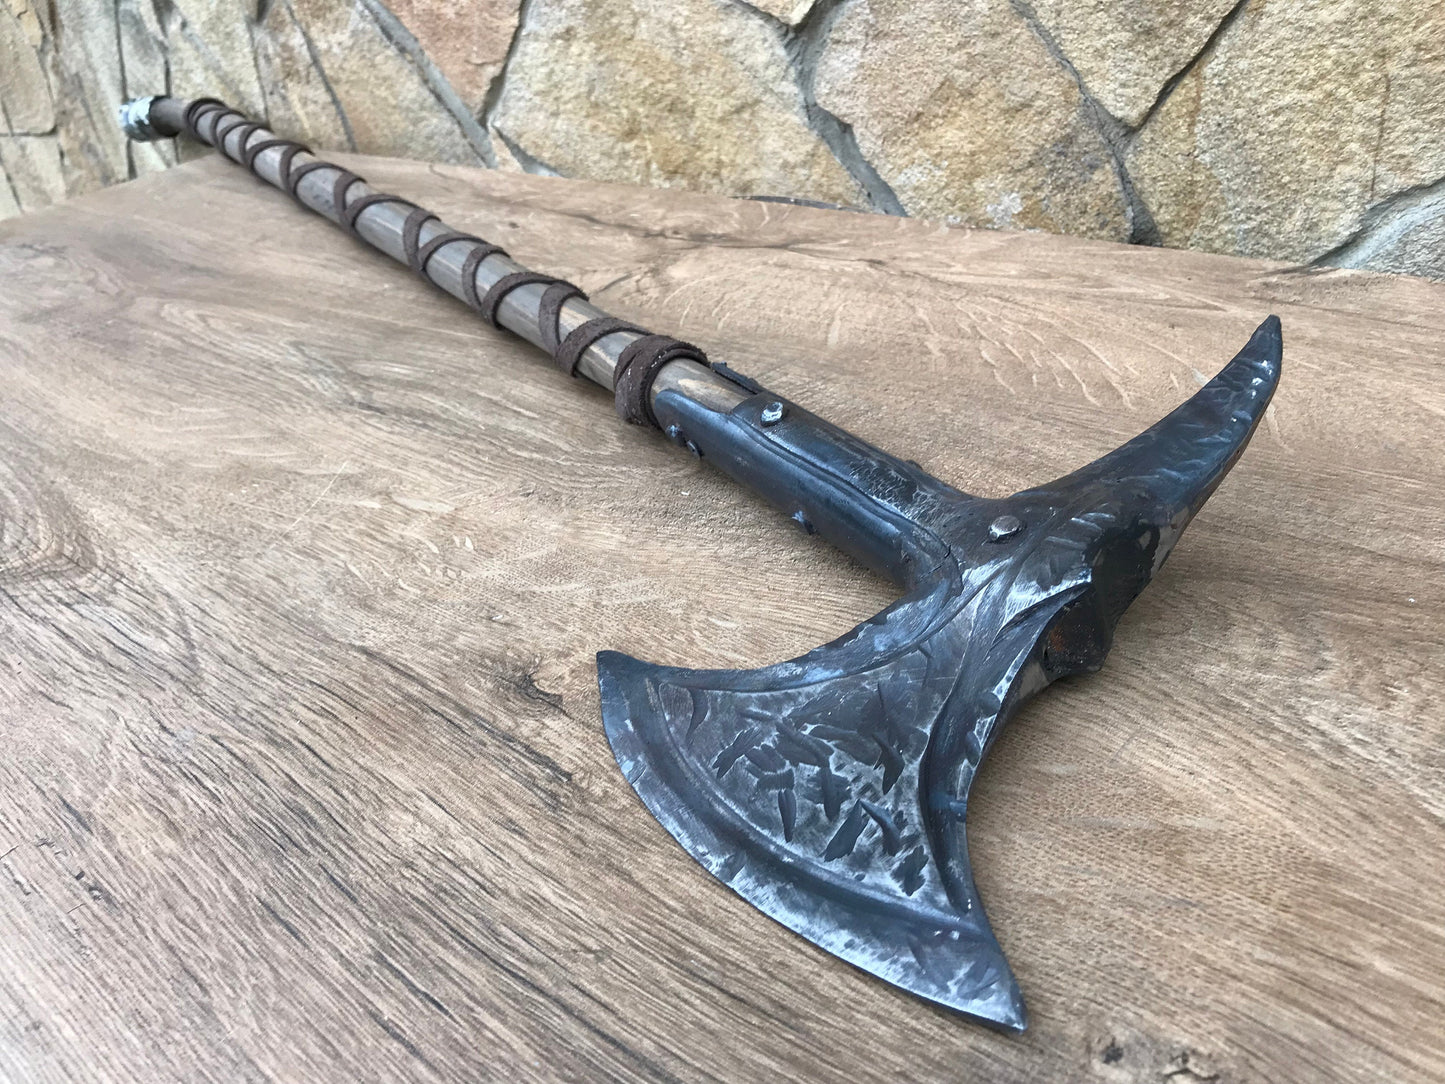 Skyrim axe, The Elder Scrolls, Iron Battleaxe, battle axe, mens armor, cosplay axe, cosplay axe, anniversary gift, mens gift, cosplay weapon